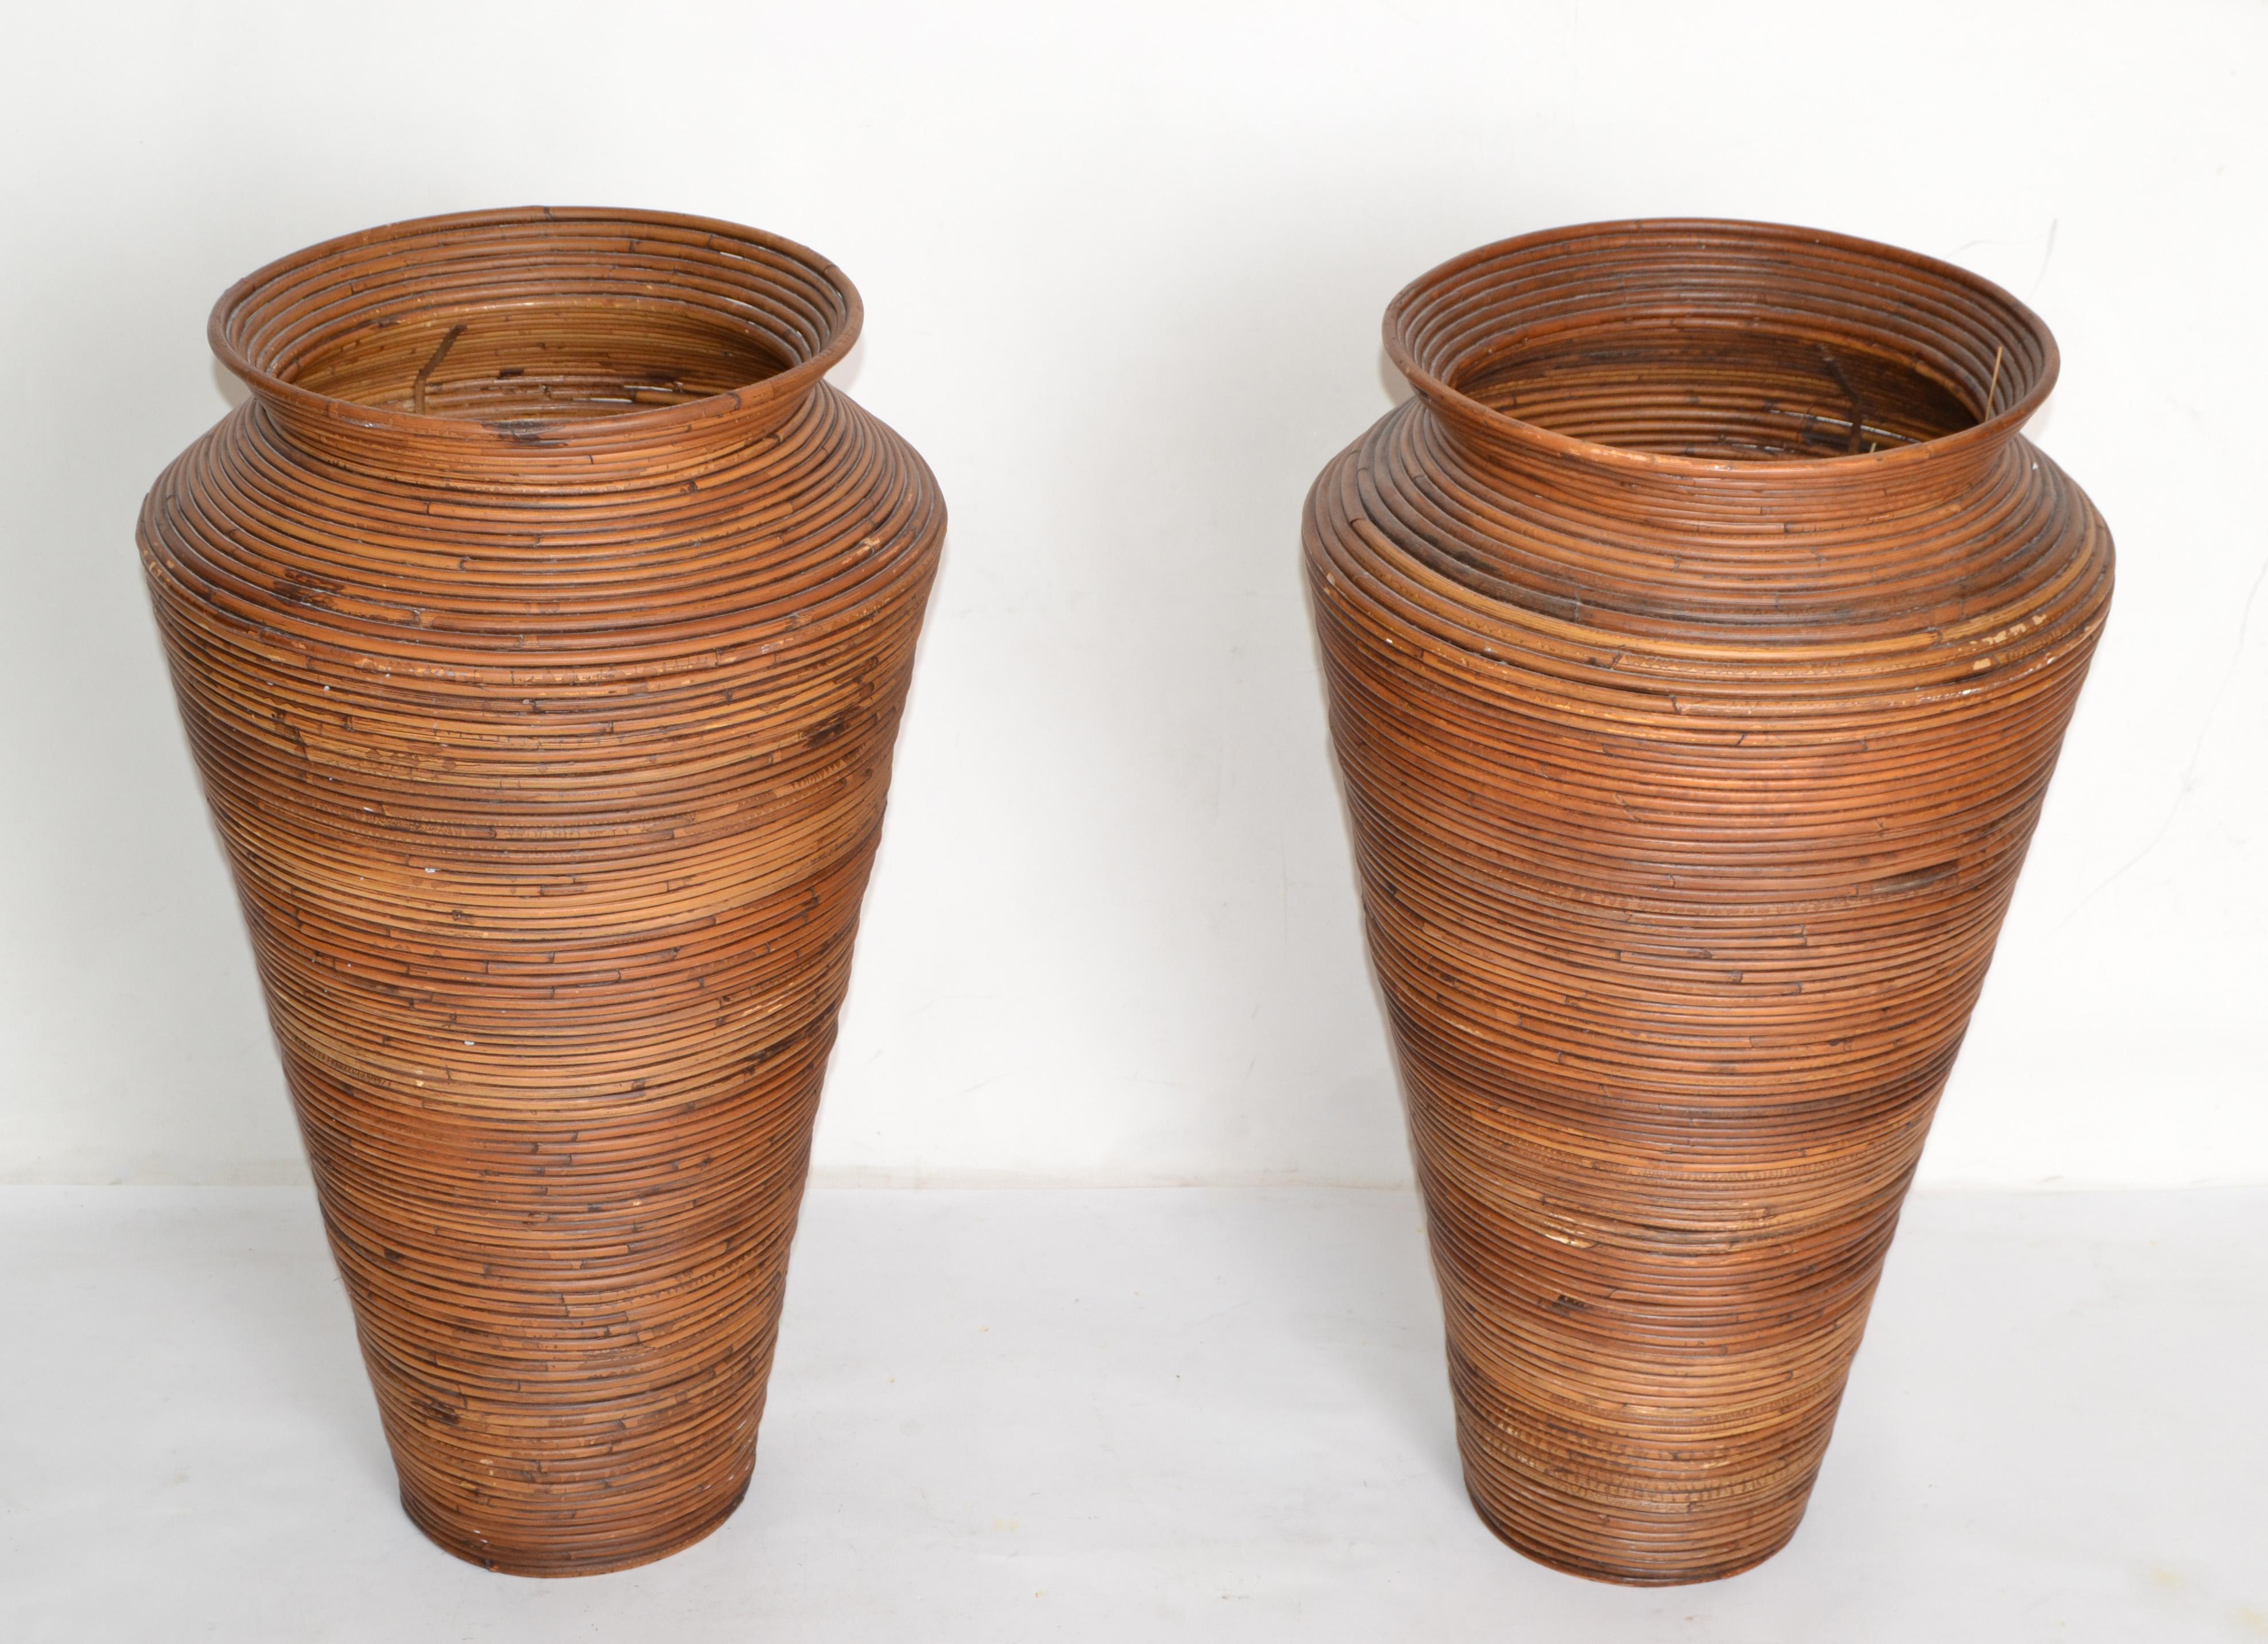 Paire de vases de sol en bambou en forme de cône, de style boho chic et moderne du milieu du siècle, fabriqués à la main.
Fabriqué en Amérique.
Un complément idéal pour votre véranda tropicale.